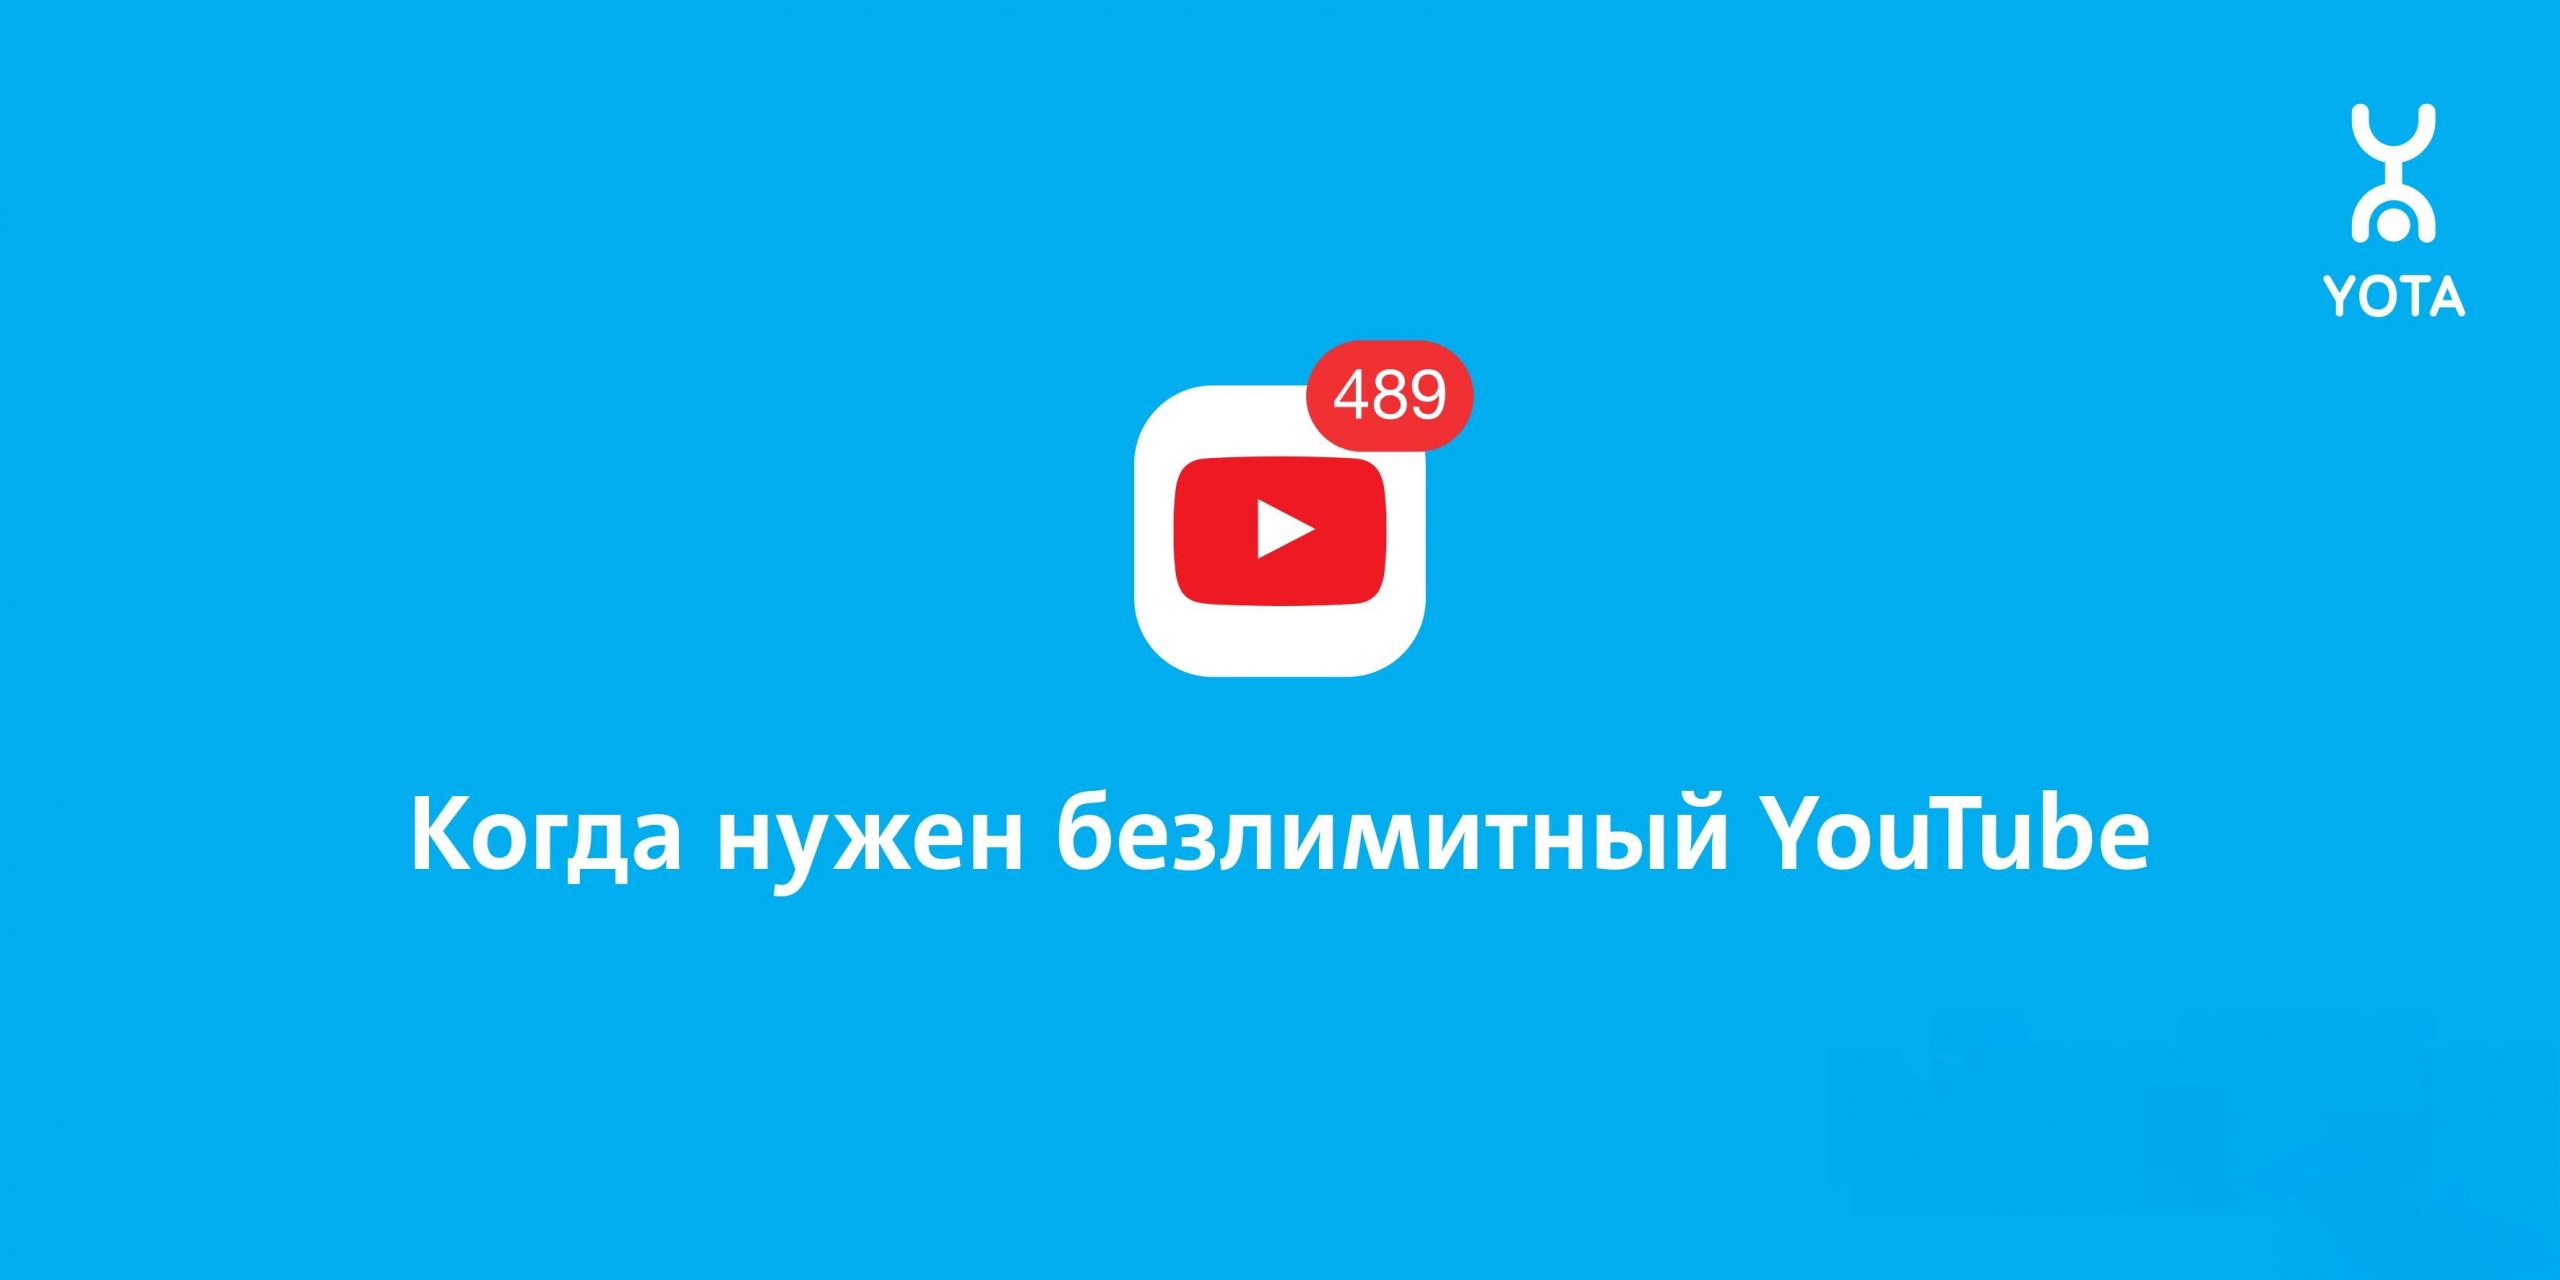 yota_youtube